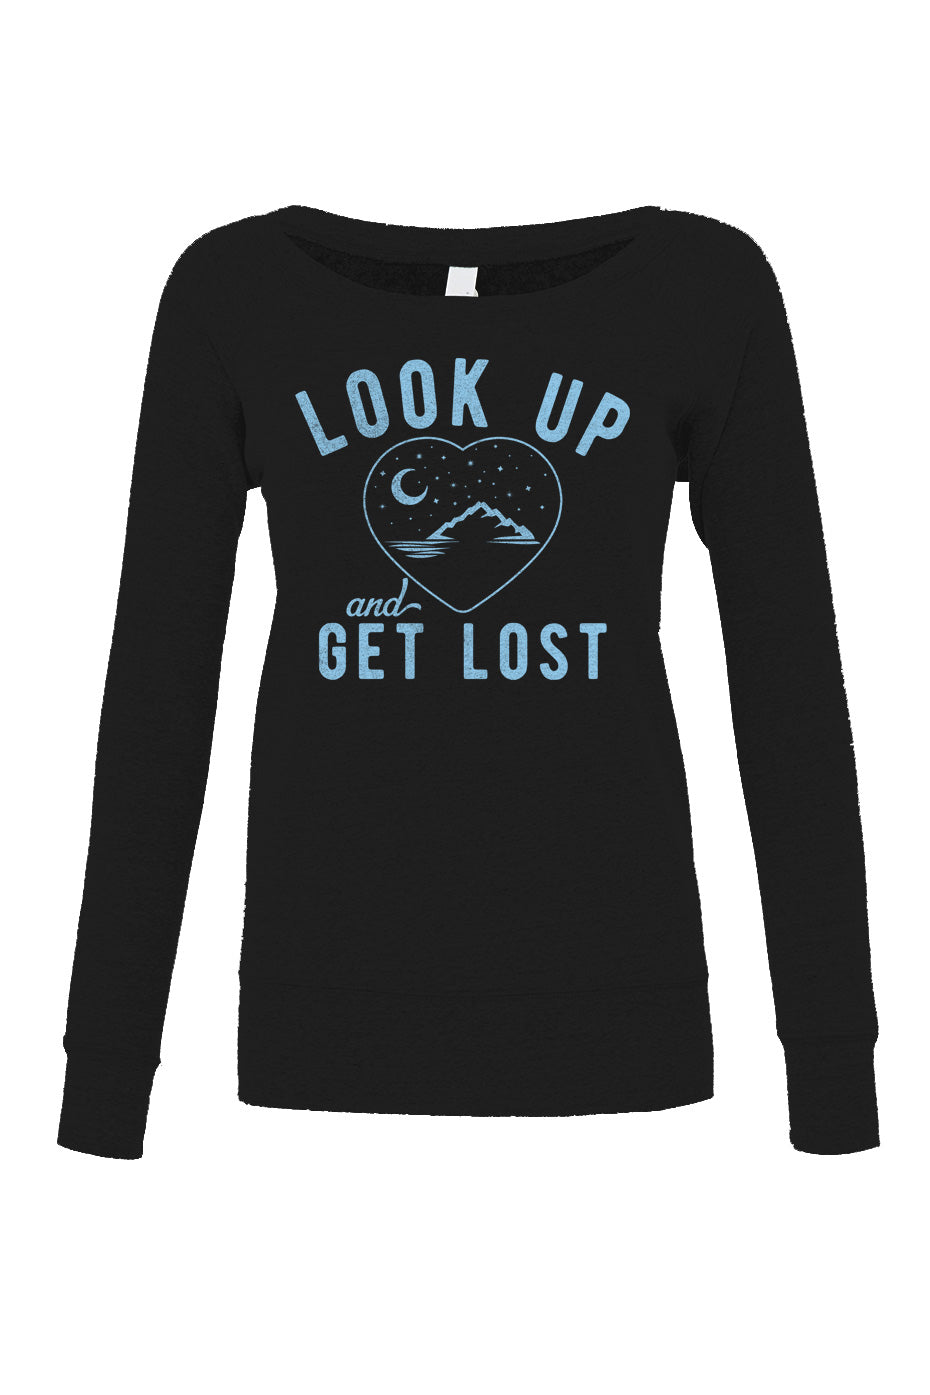 Women's Look Up and Get Lost Scoop Neck Fleece - Astronomy Shirt